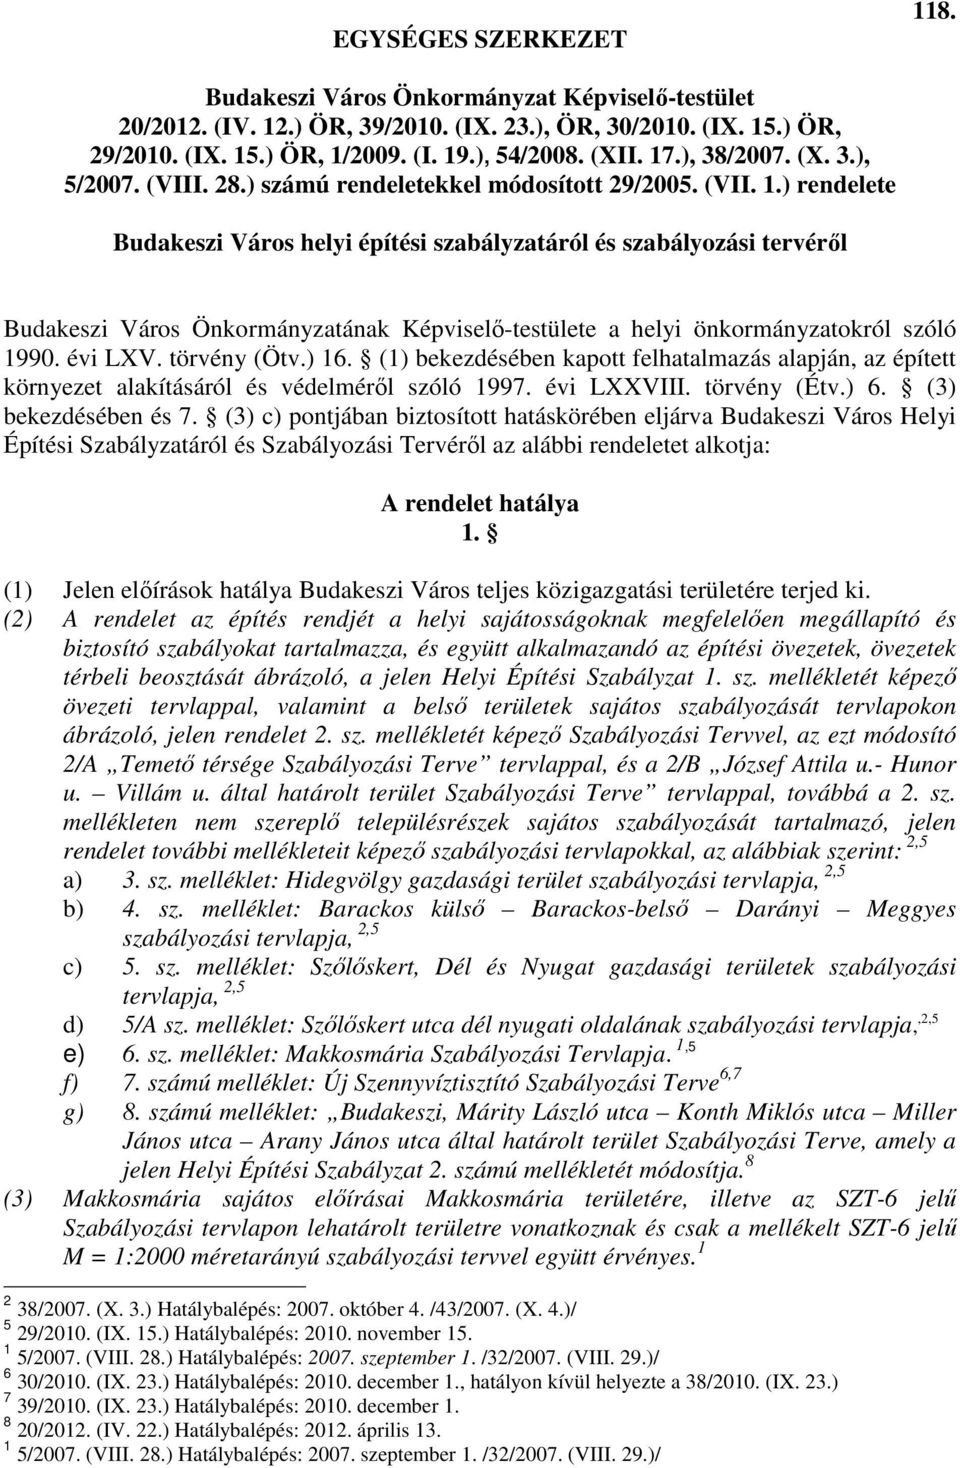 ) rendelete Budakeszi Város helyi építési szabályzatáról és szabályozási tervérıl Budakeszi Város Önkormányzatának Képviselı-testülete a helyi önkormányzatokról szóló 1990. évi LXV. törvény (Ötv.) 16.